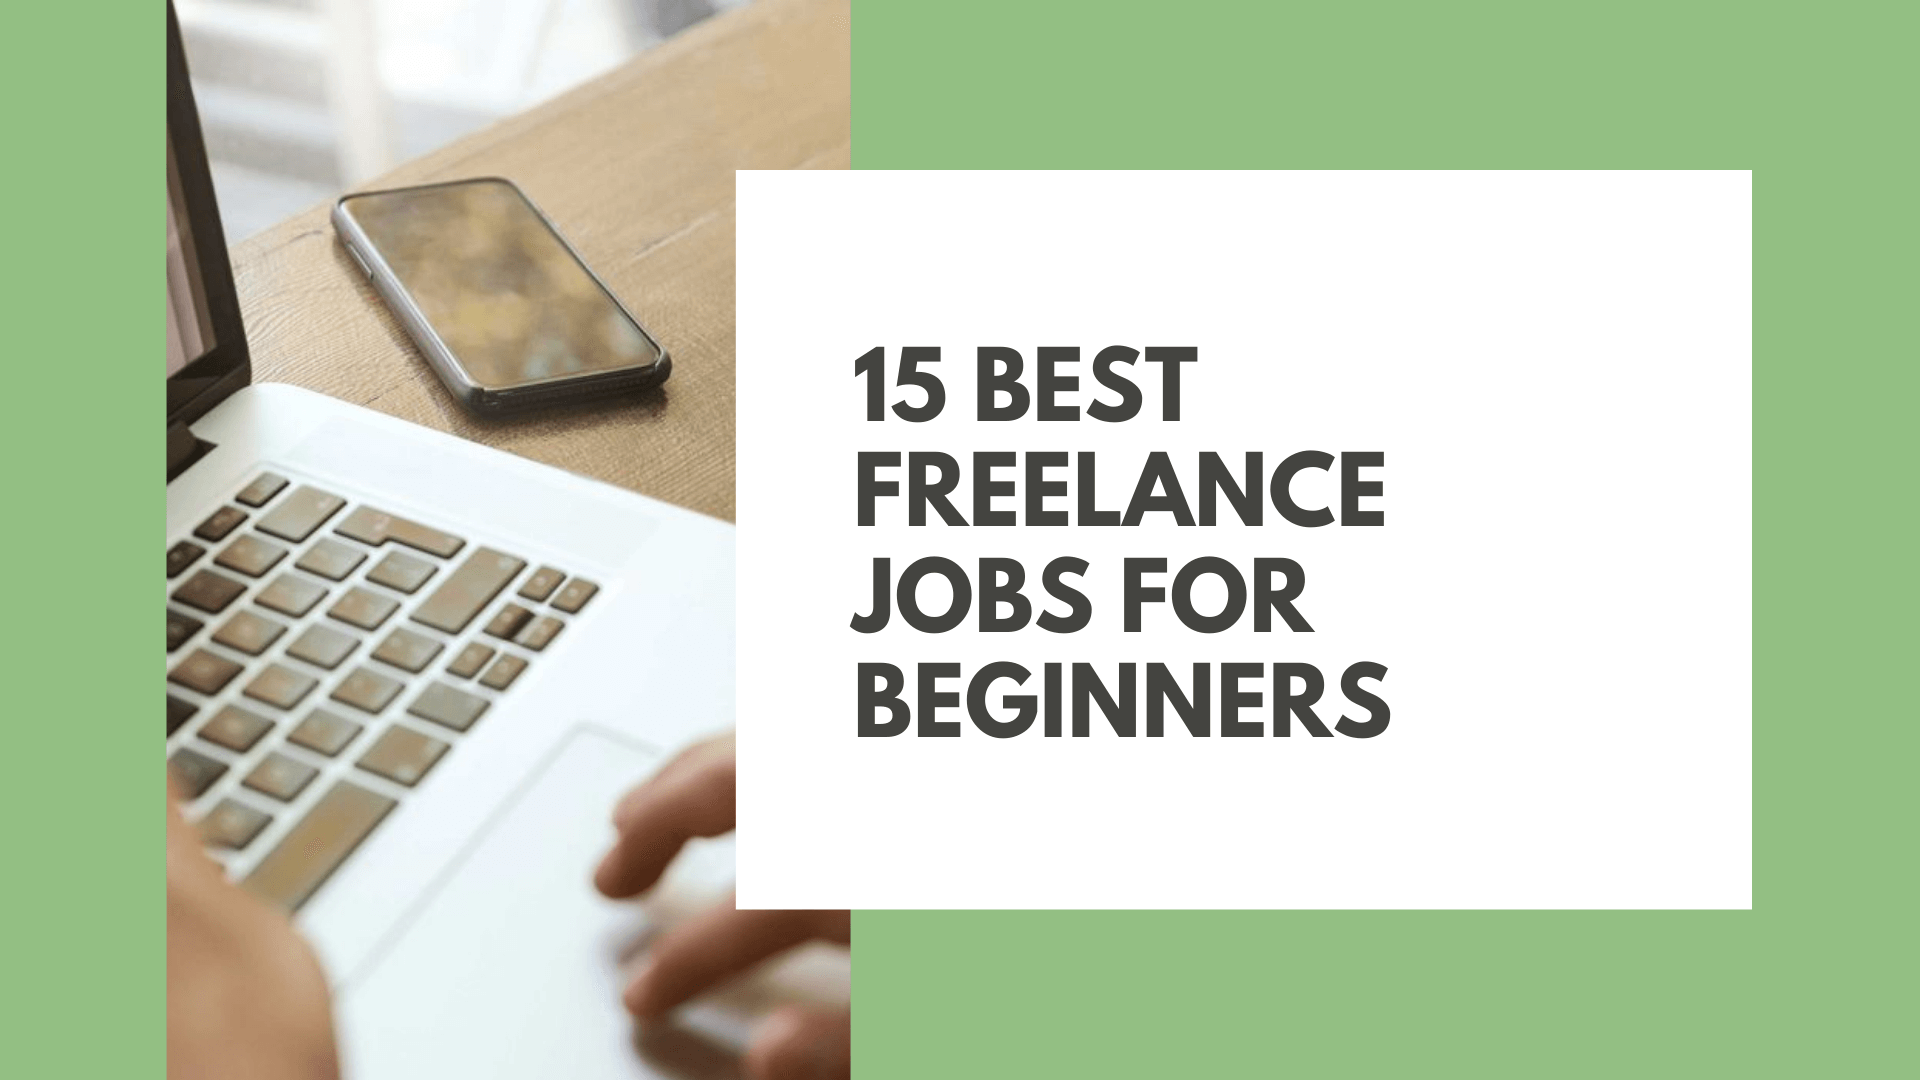 15 Best Freelance Jobs for Beginners